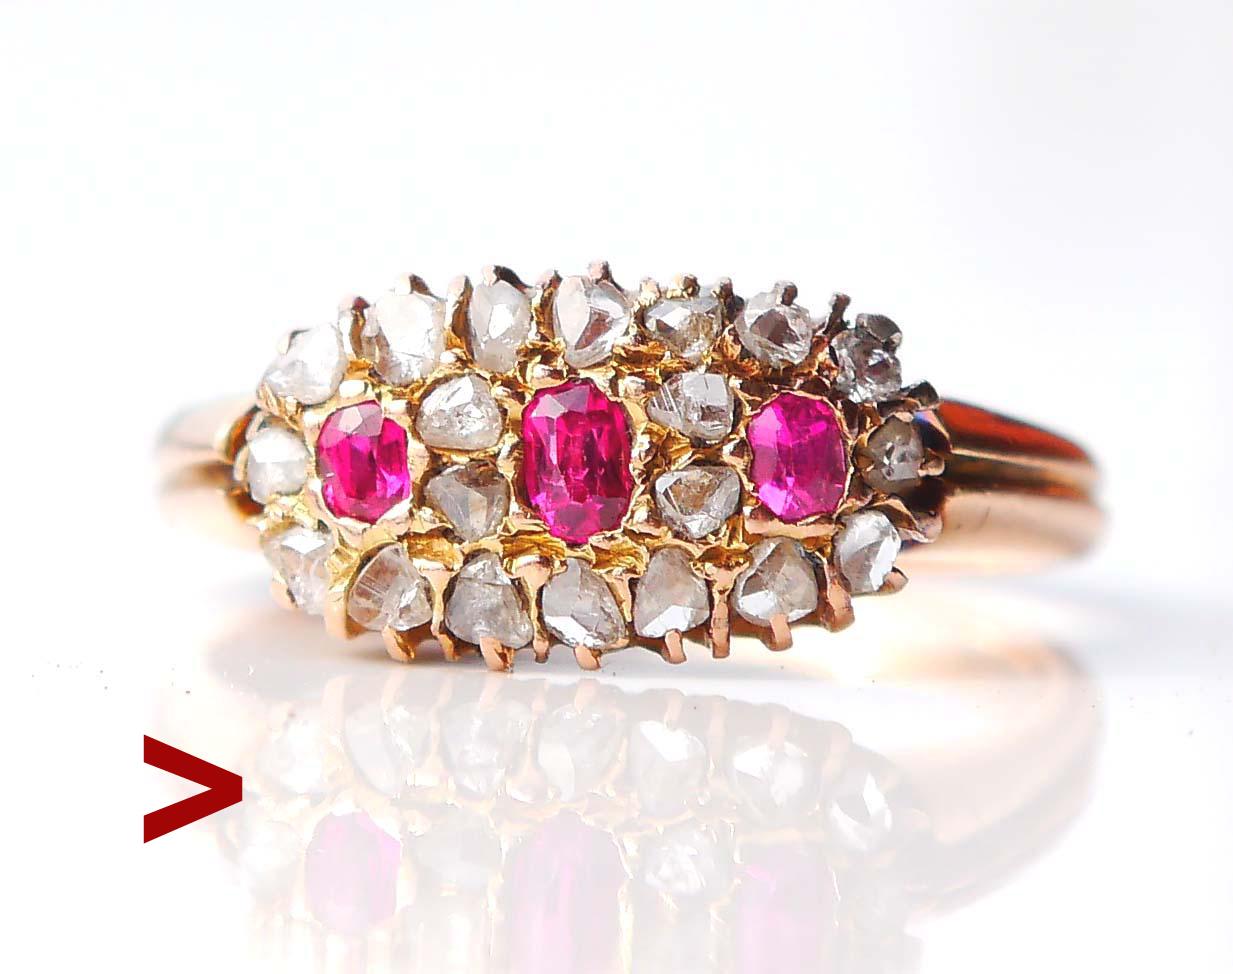 Alter estnischer Ring mit natürlichem Rubin und Diamanten, hergestellt zwischen 1919 und 1924.

Dieser Ring zeigt die Traditionen und Techniken der russischen Juwelierschule, die kurz nach dem Zusammenbruch des Russischen Reiches, als Estland ein